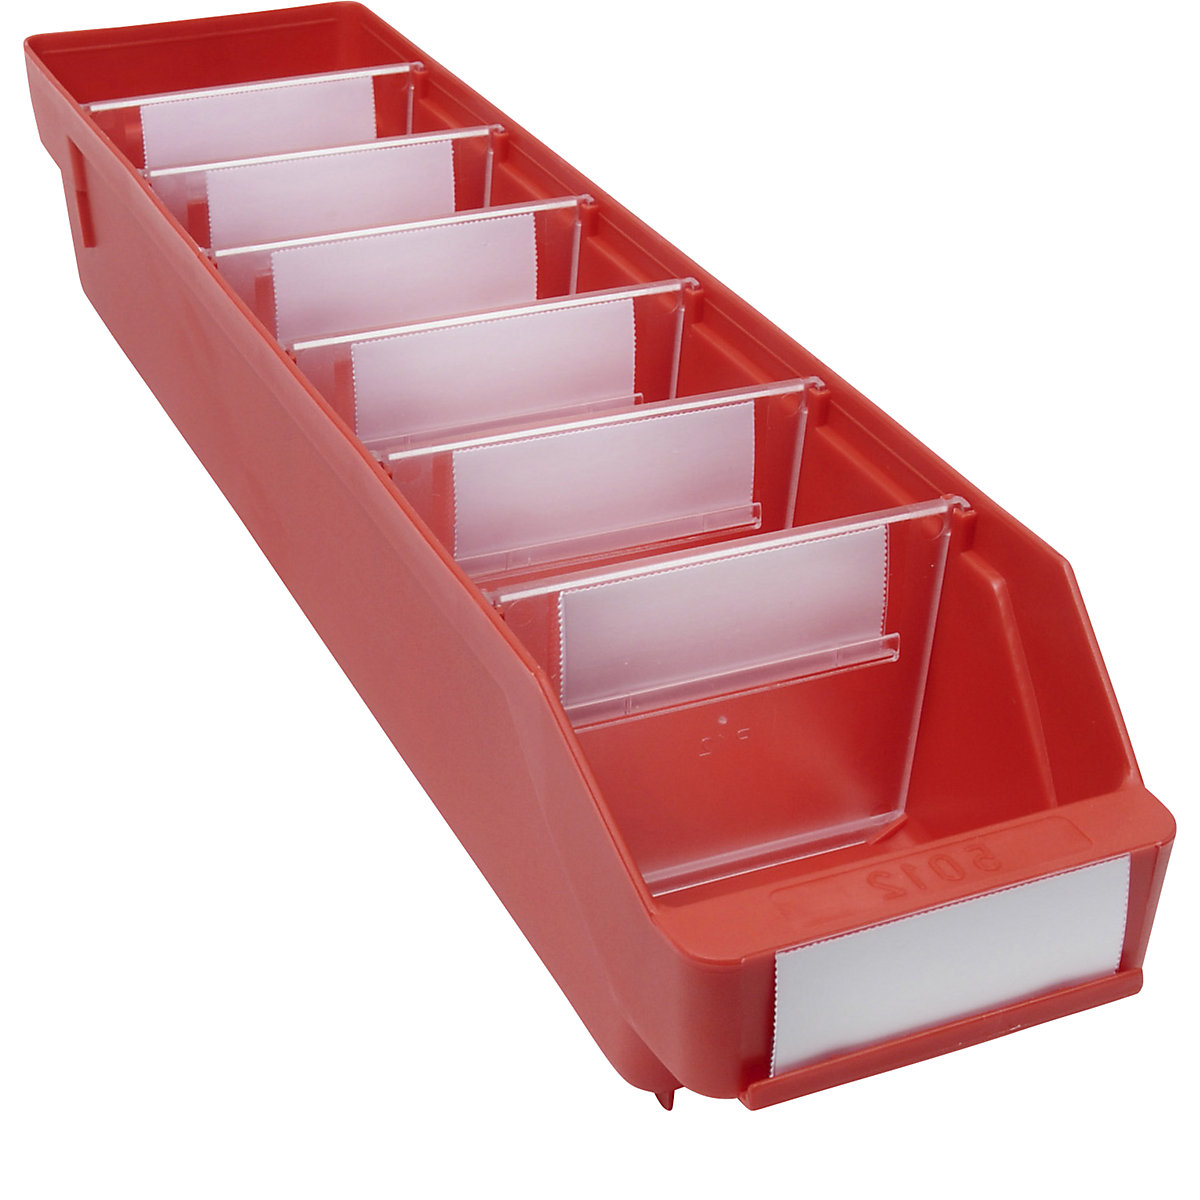 Regalkasten aus hochschlagfestem Polypropylen STEMO, rot, LxBxH 500 x 118 x 95 mm, VE 30 Stk-4